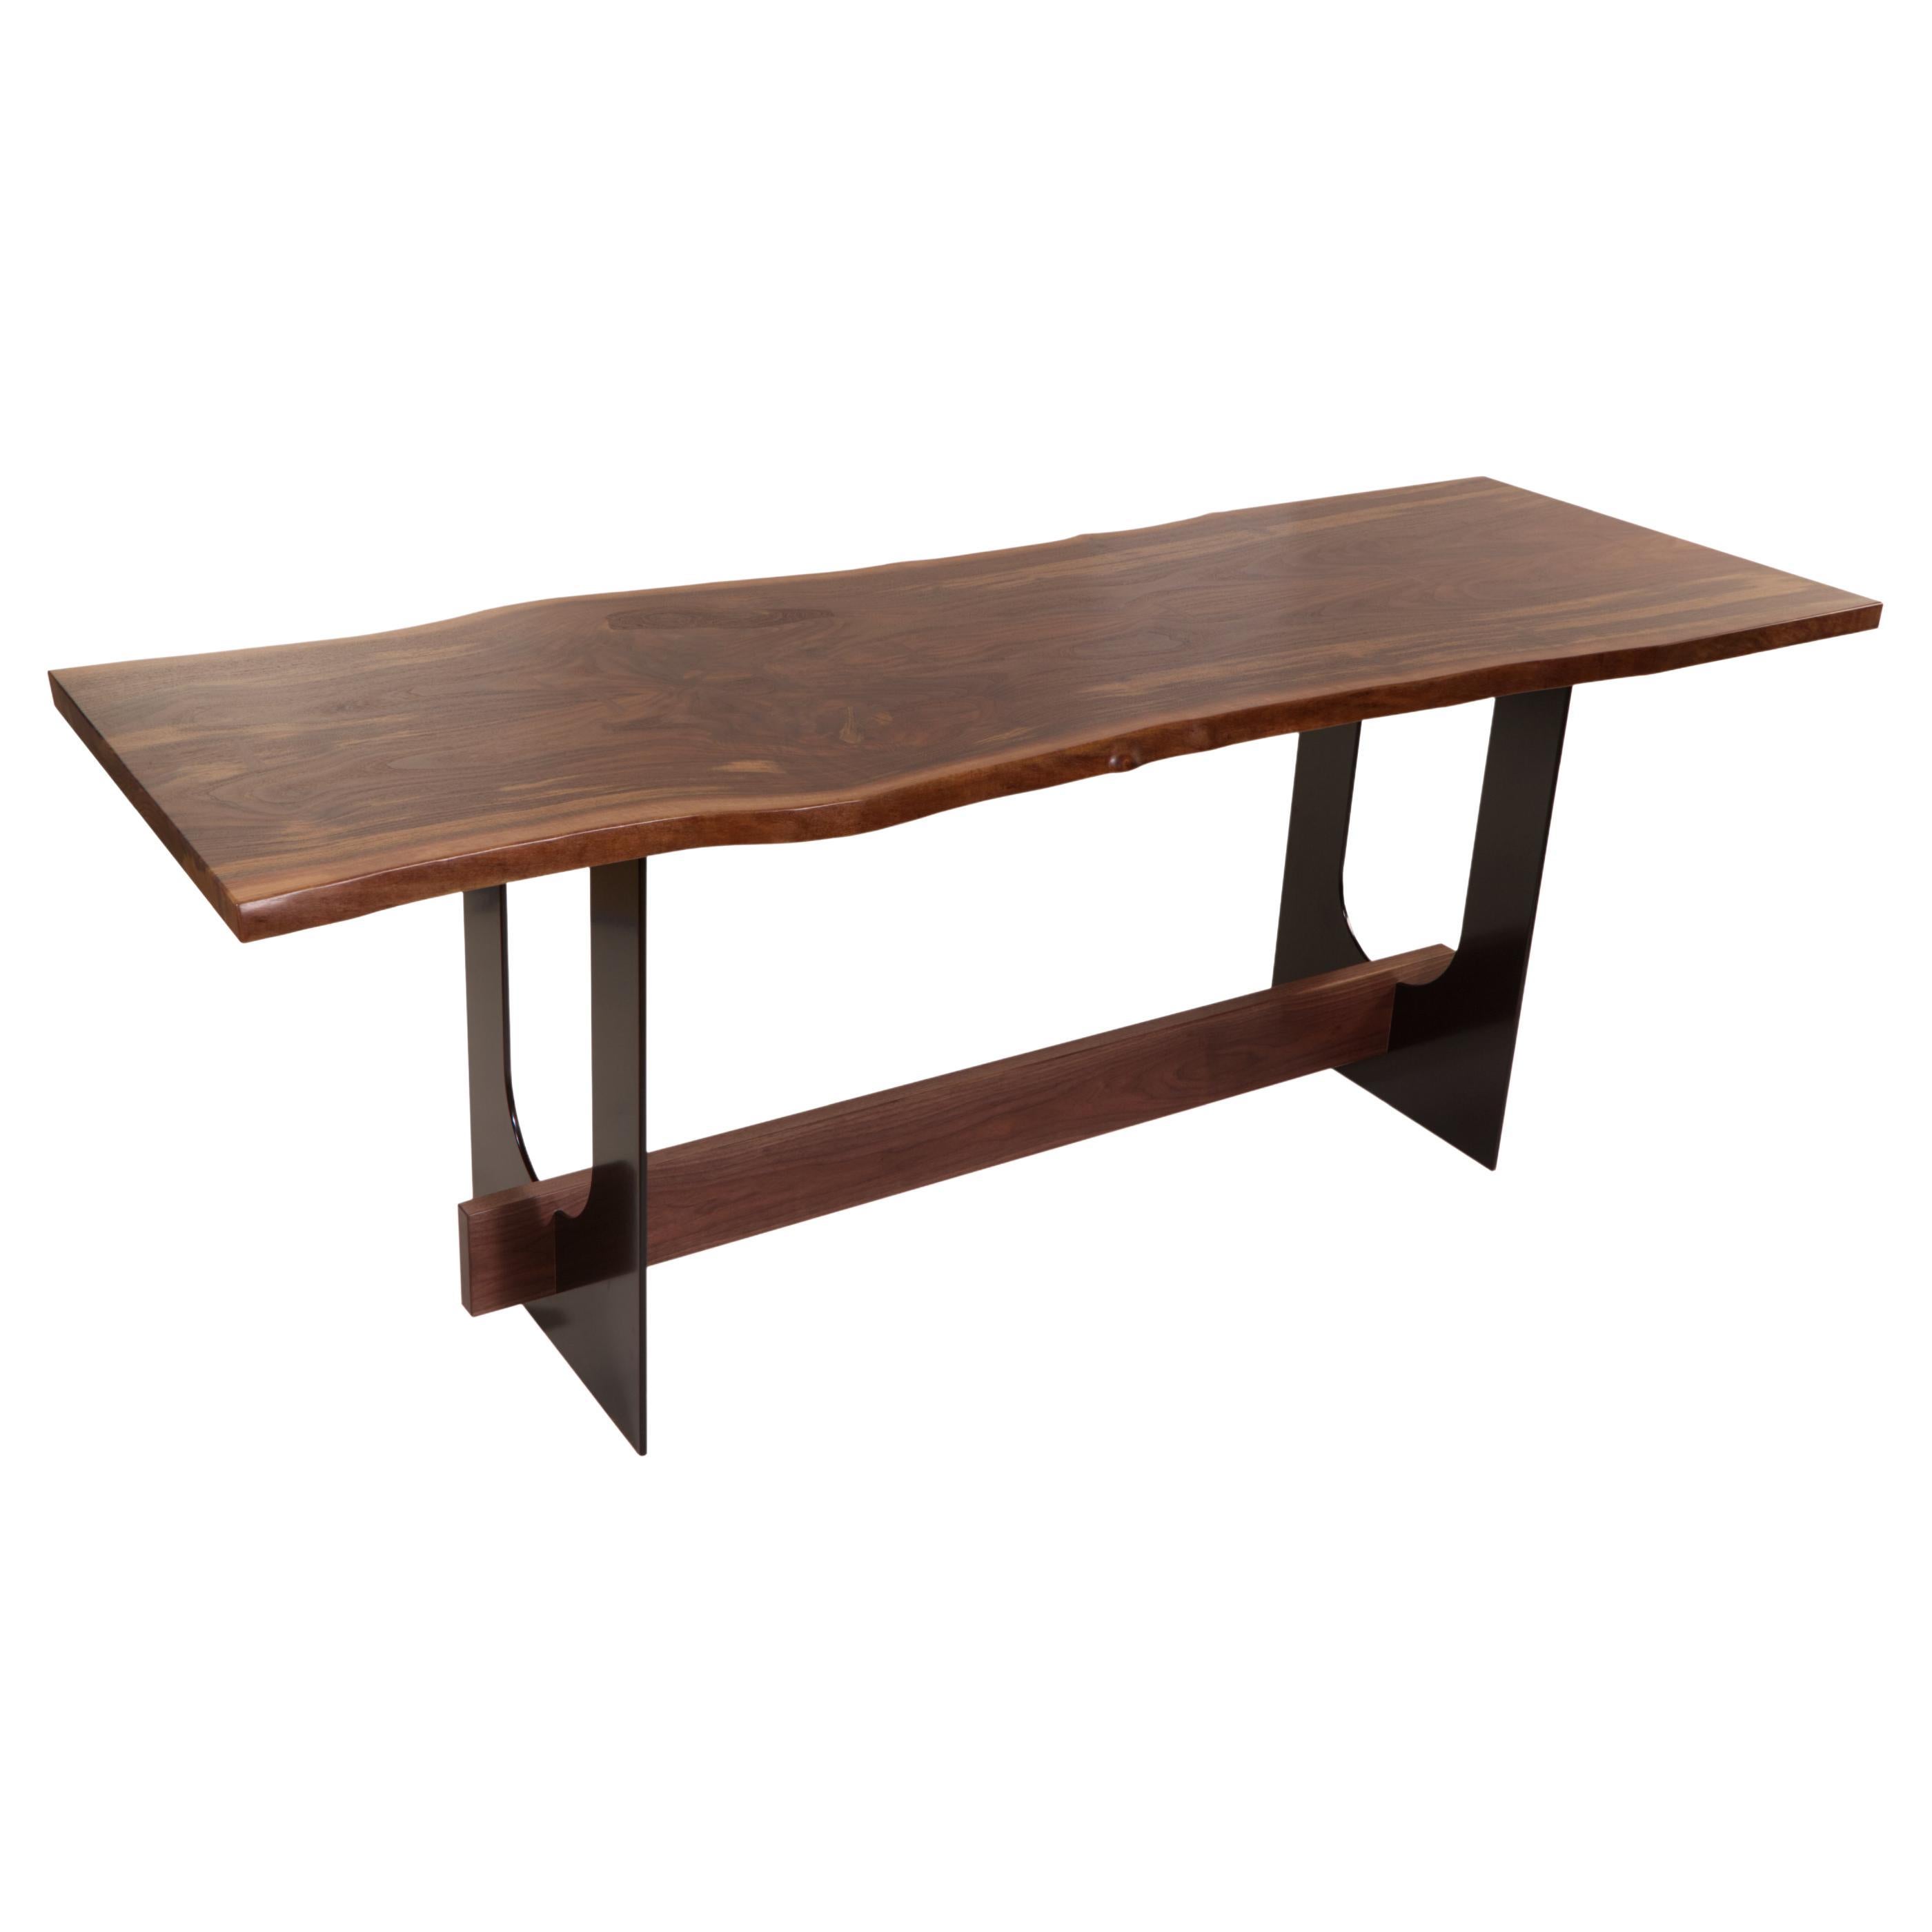 Industriell und raffiniert - diese beiden Worte beschreiben den Menlo Table treffend. Mit einer Platte aus schönem Nussbaumholz, die auf einem Paar massiver Stahlbeine ruht, passt dieses schlichte Design in jeden Raum, von ganz modern bis rustikal.